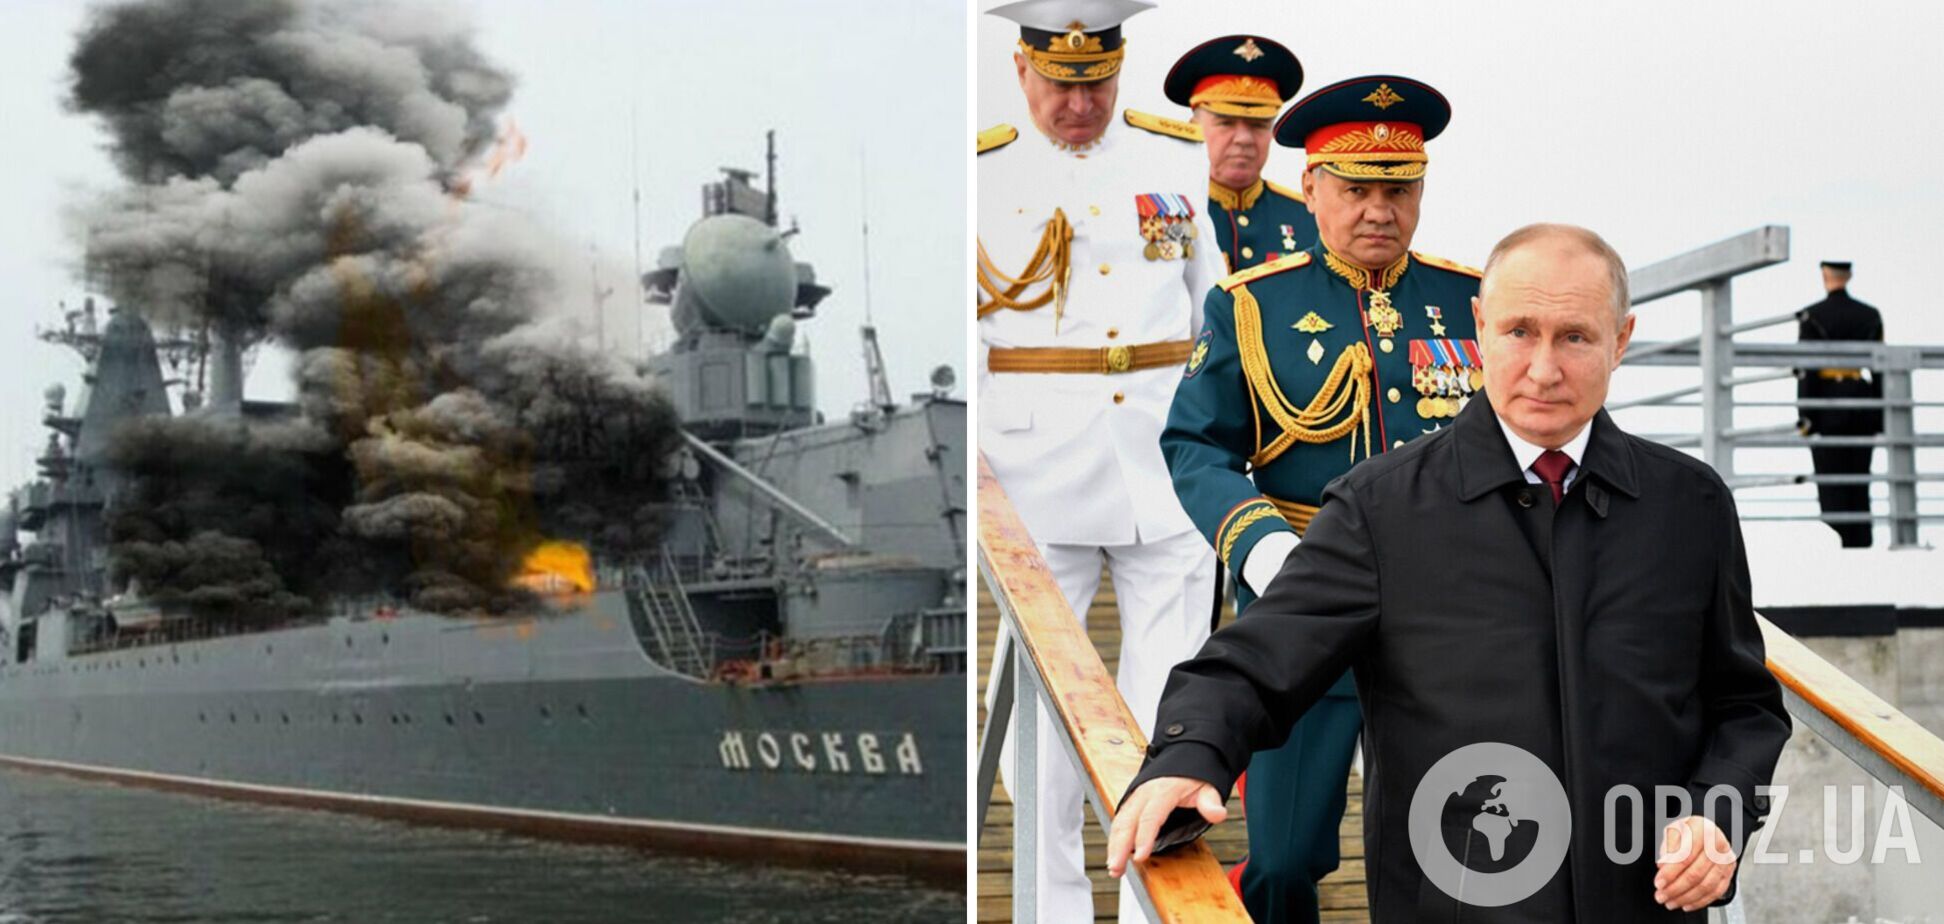 В РФ издание поздравило россиян с днем ВМФ снимком затонувшего крейсера 'Москва'. Фотофакт